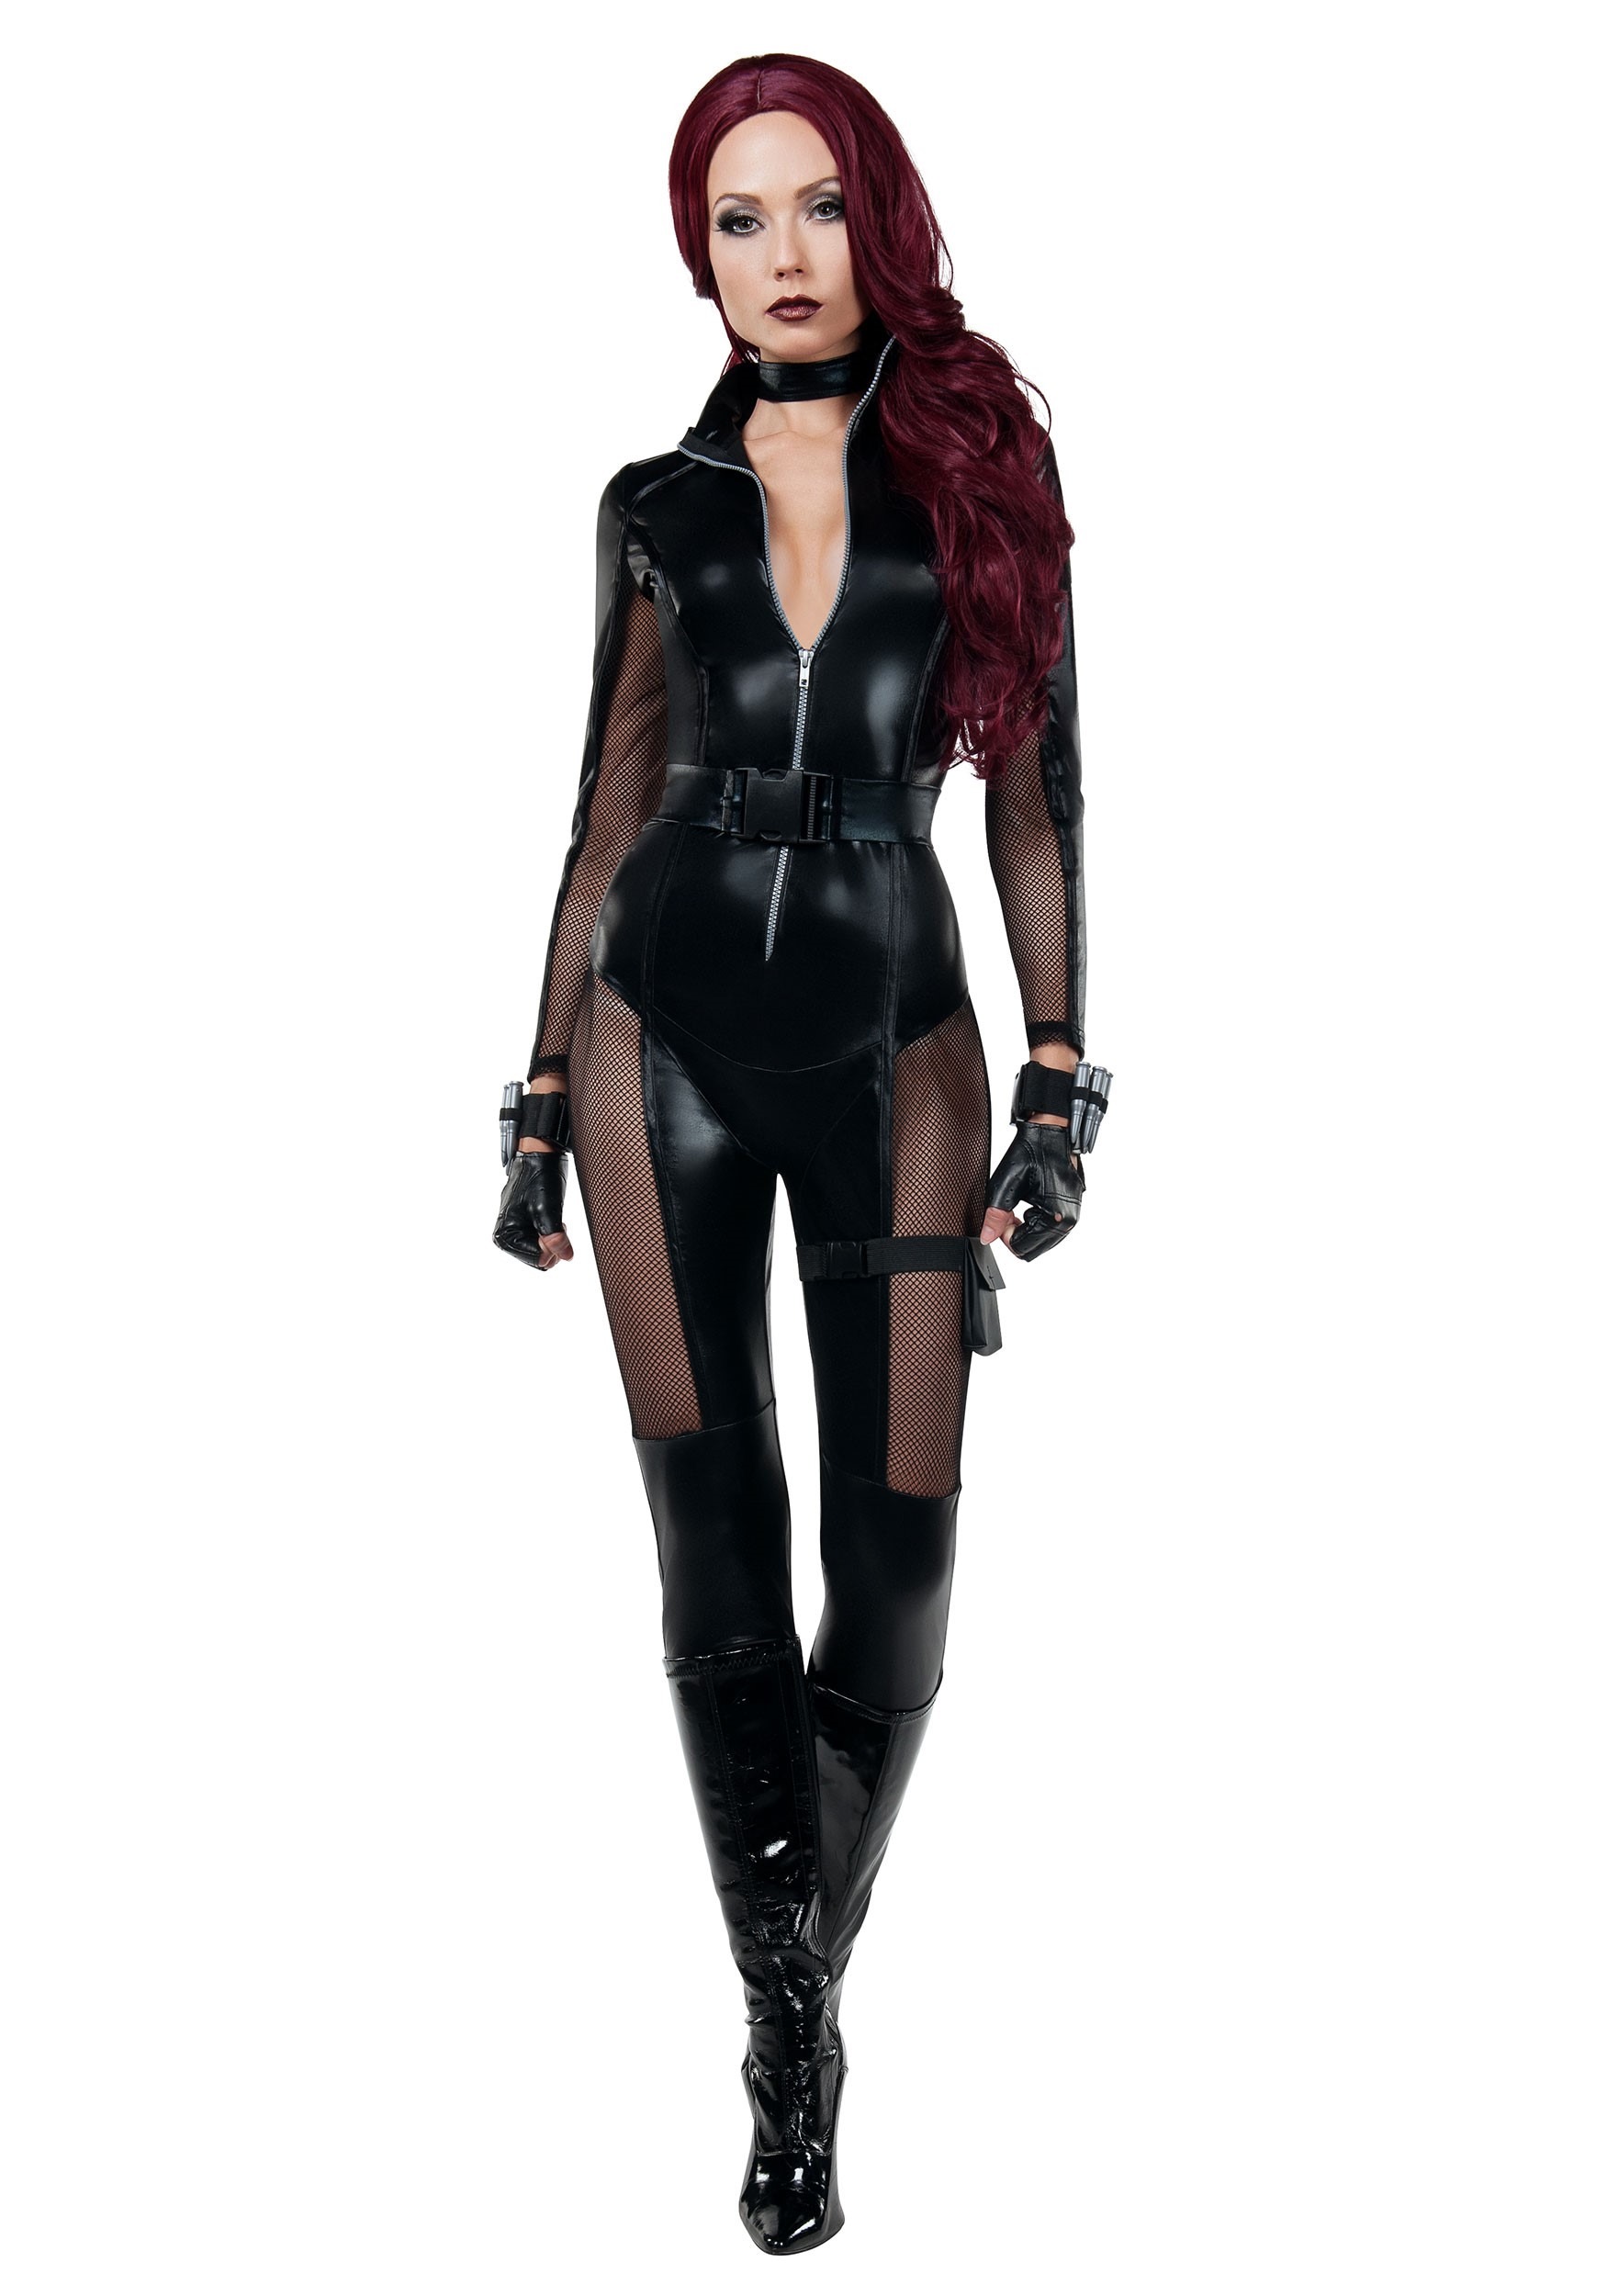 female assassin costume ideas